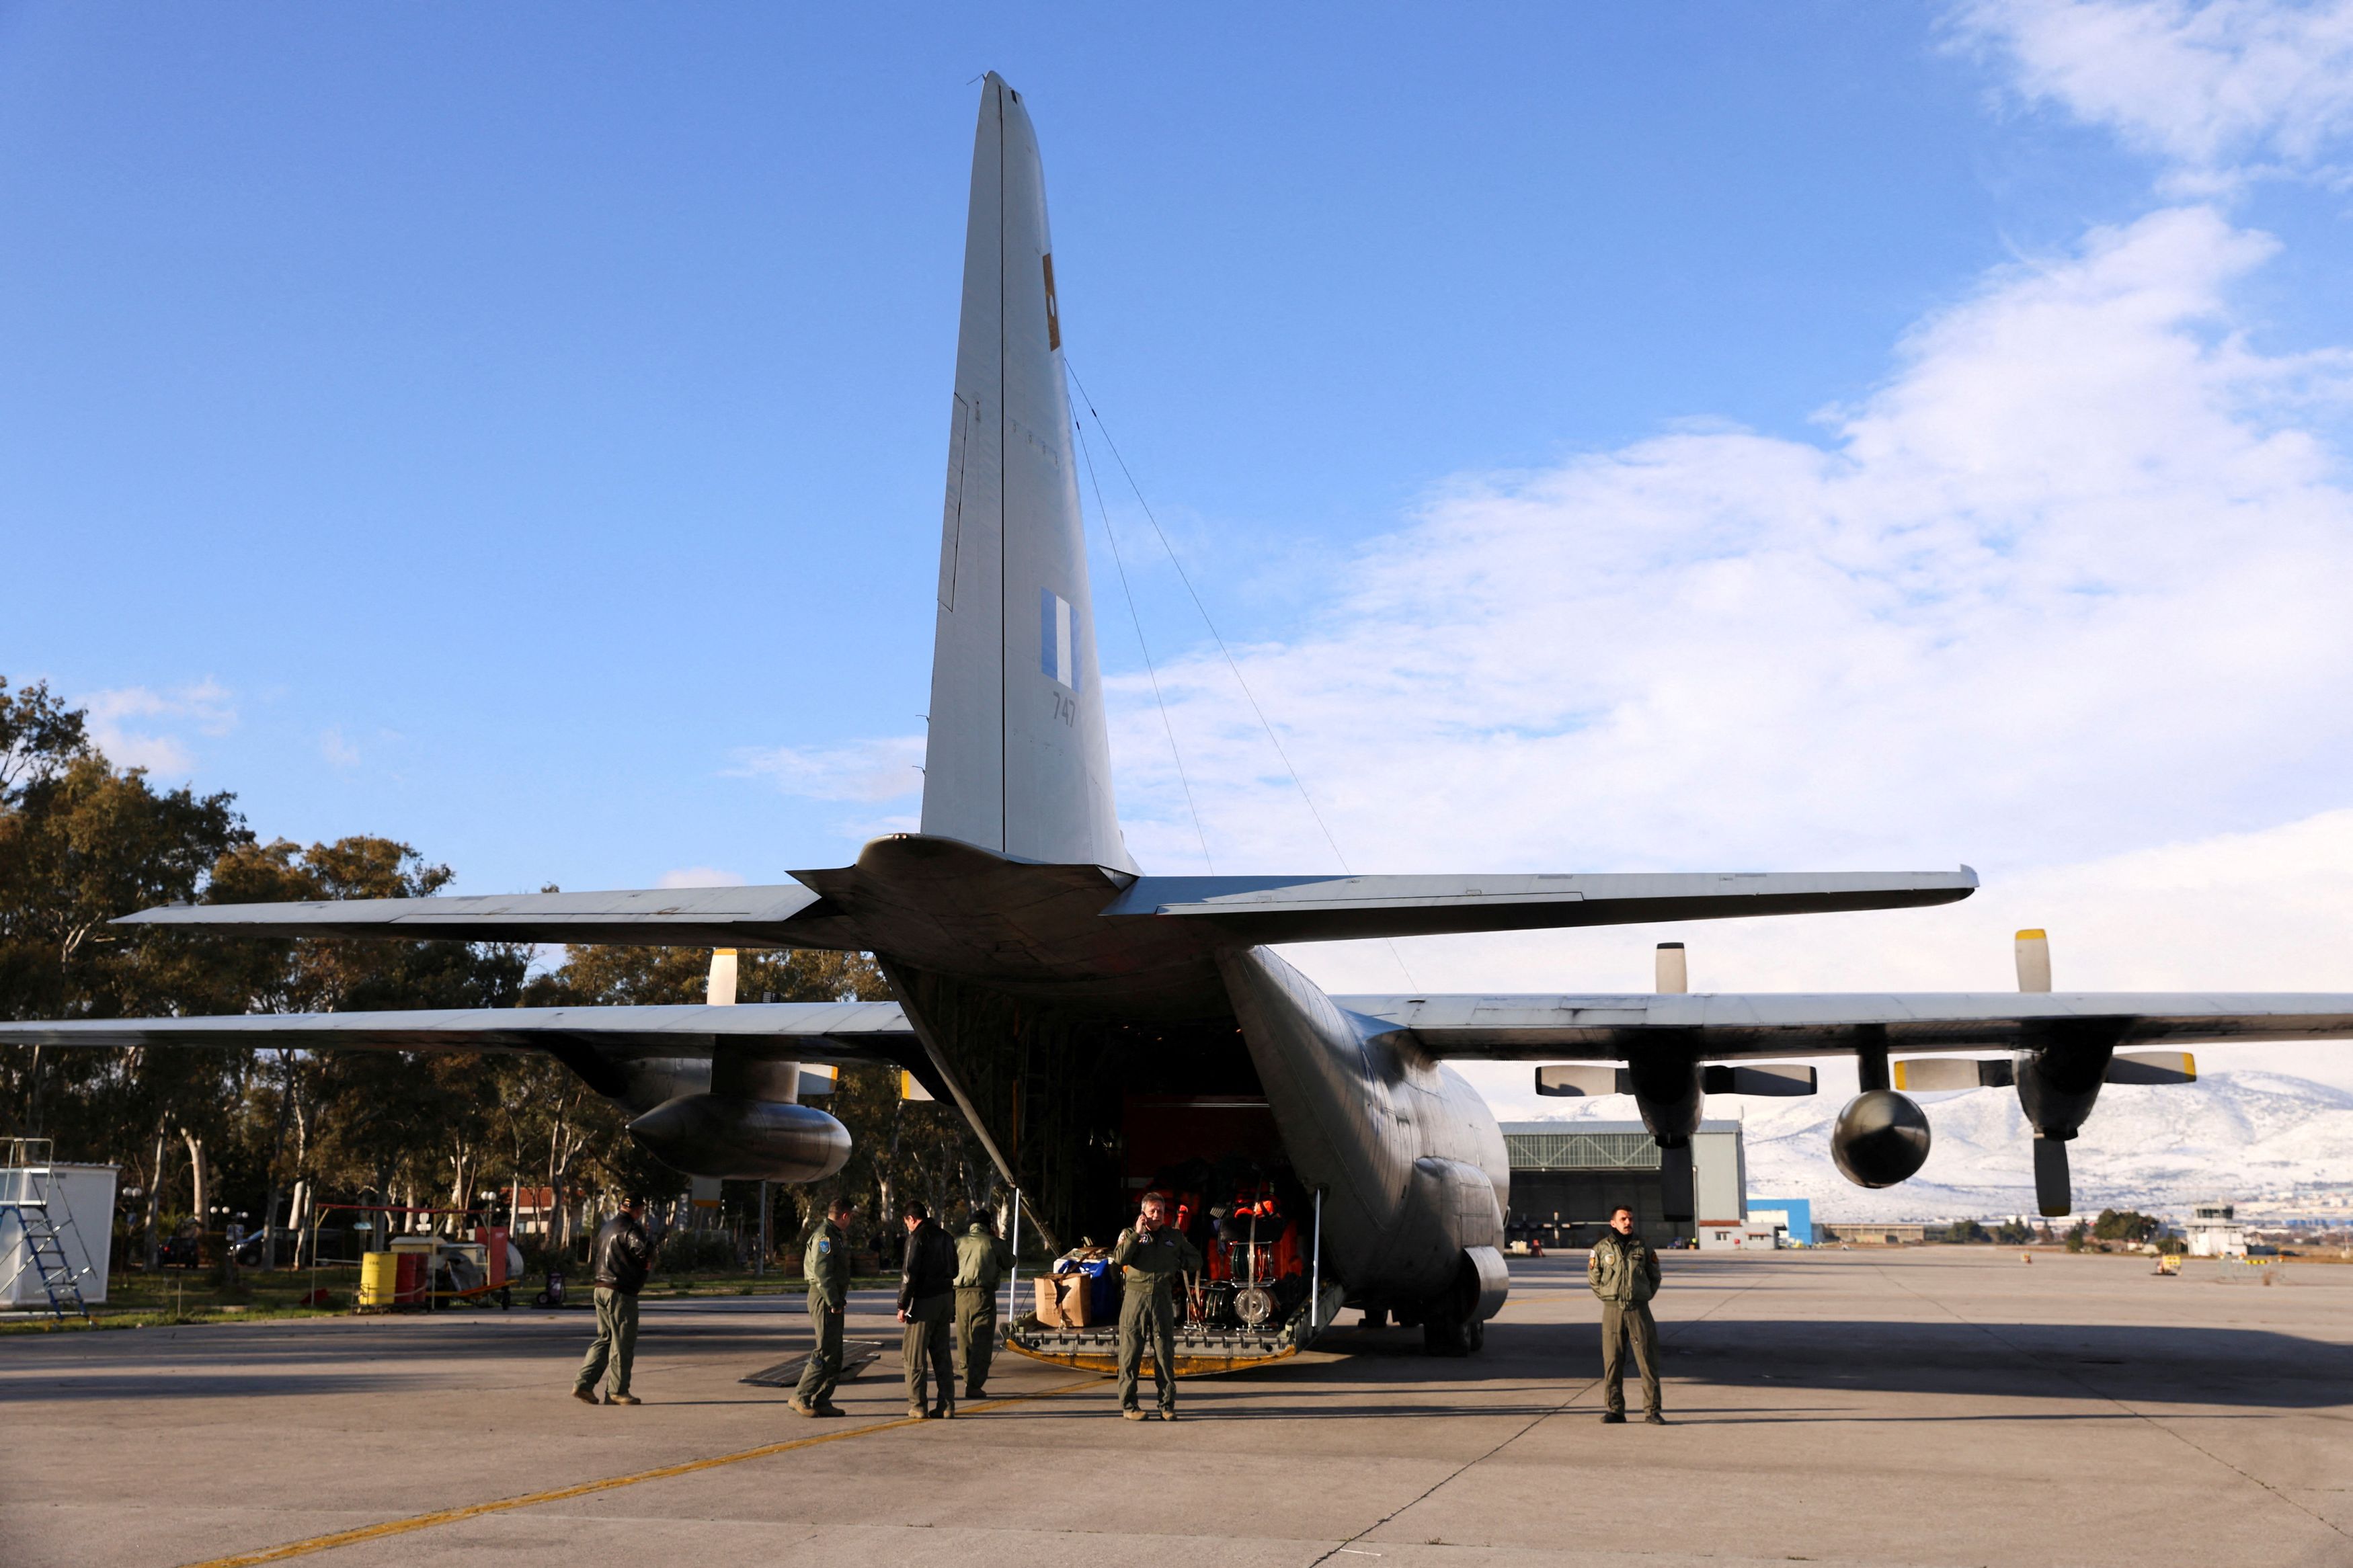 Βλάβη στον αέρα για το C-130 που μετέφερε την 2η ΕΜΑΚ στην Τουρκία - Επιστρέφει στην Ελευσίνα